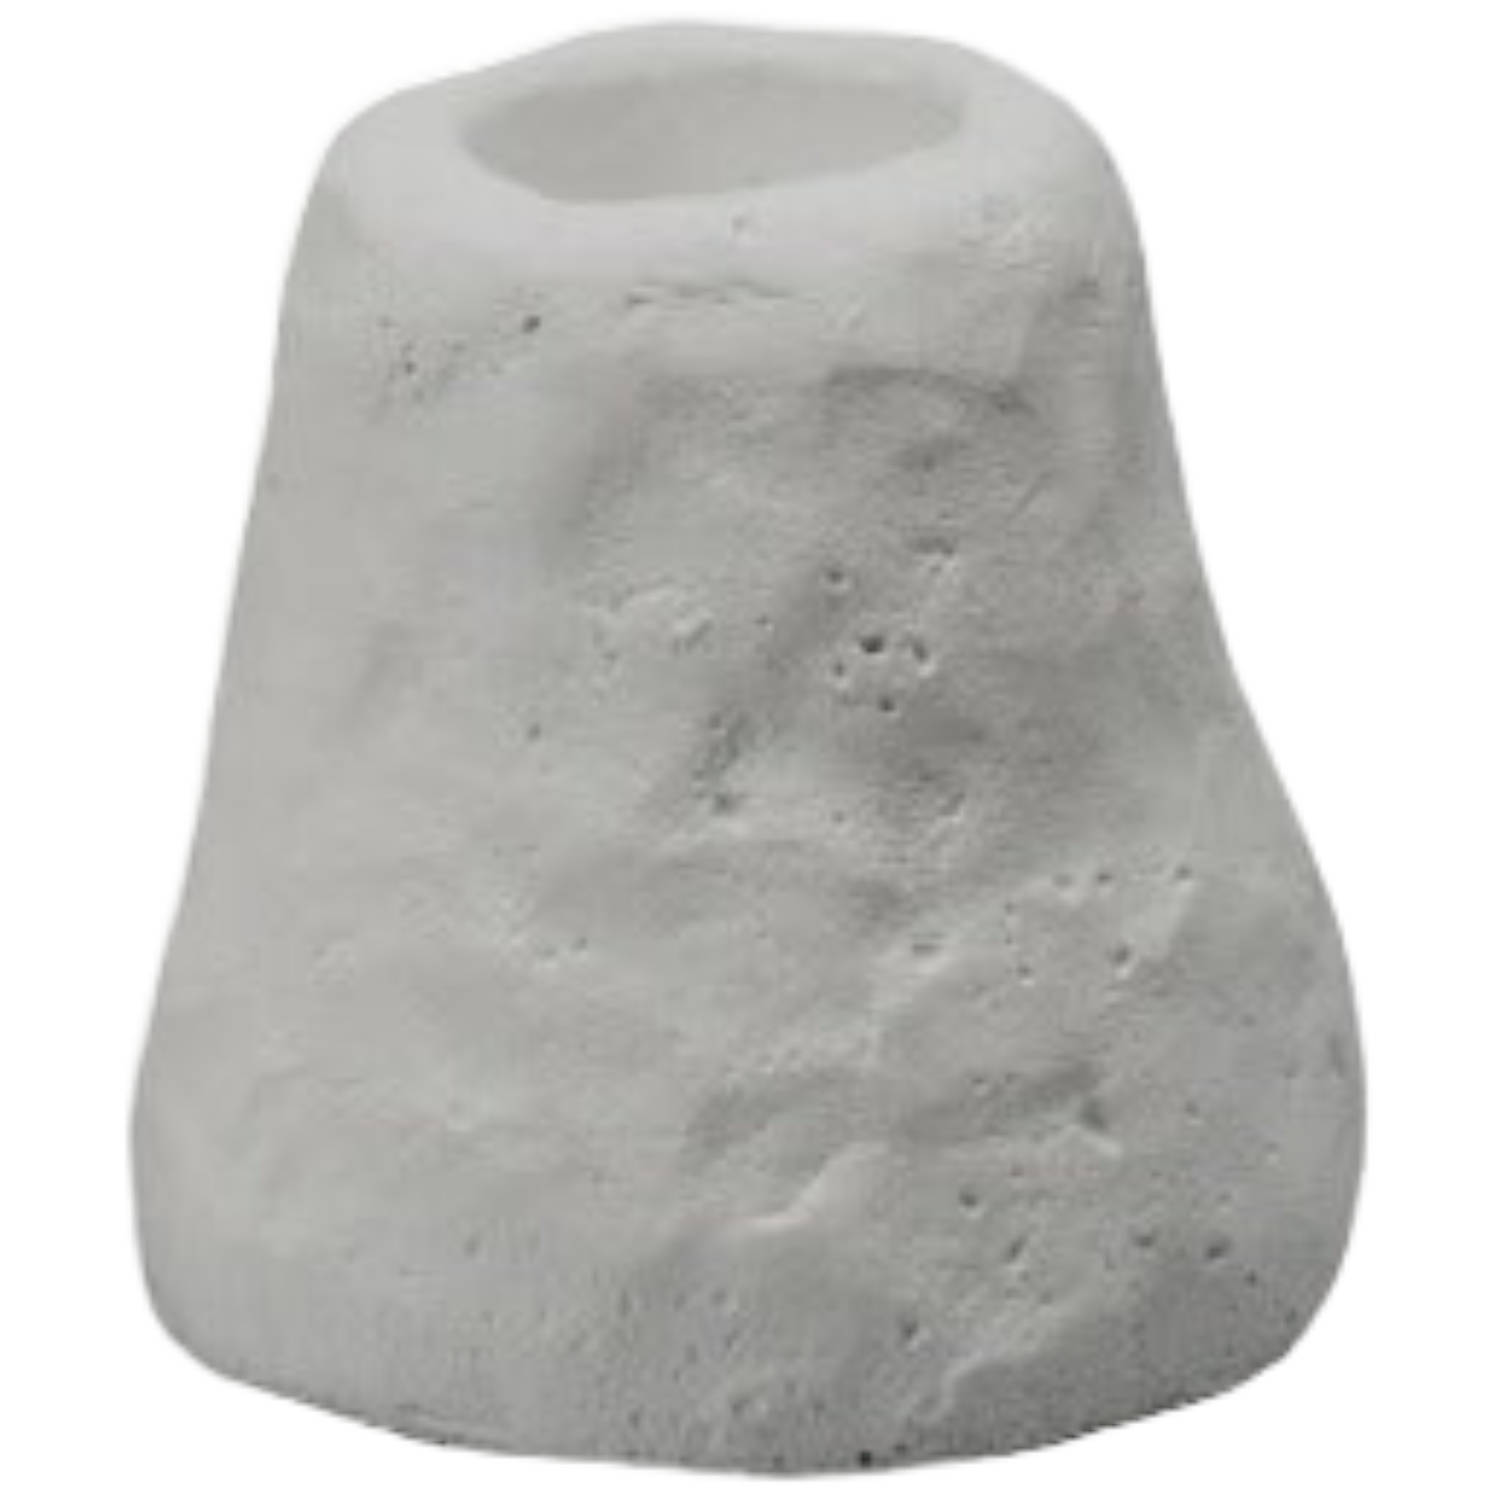 Leeff kandelaar carmen grijs klein - cement - Ø 5,6 centimeter x 5,3 centimeter